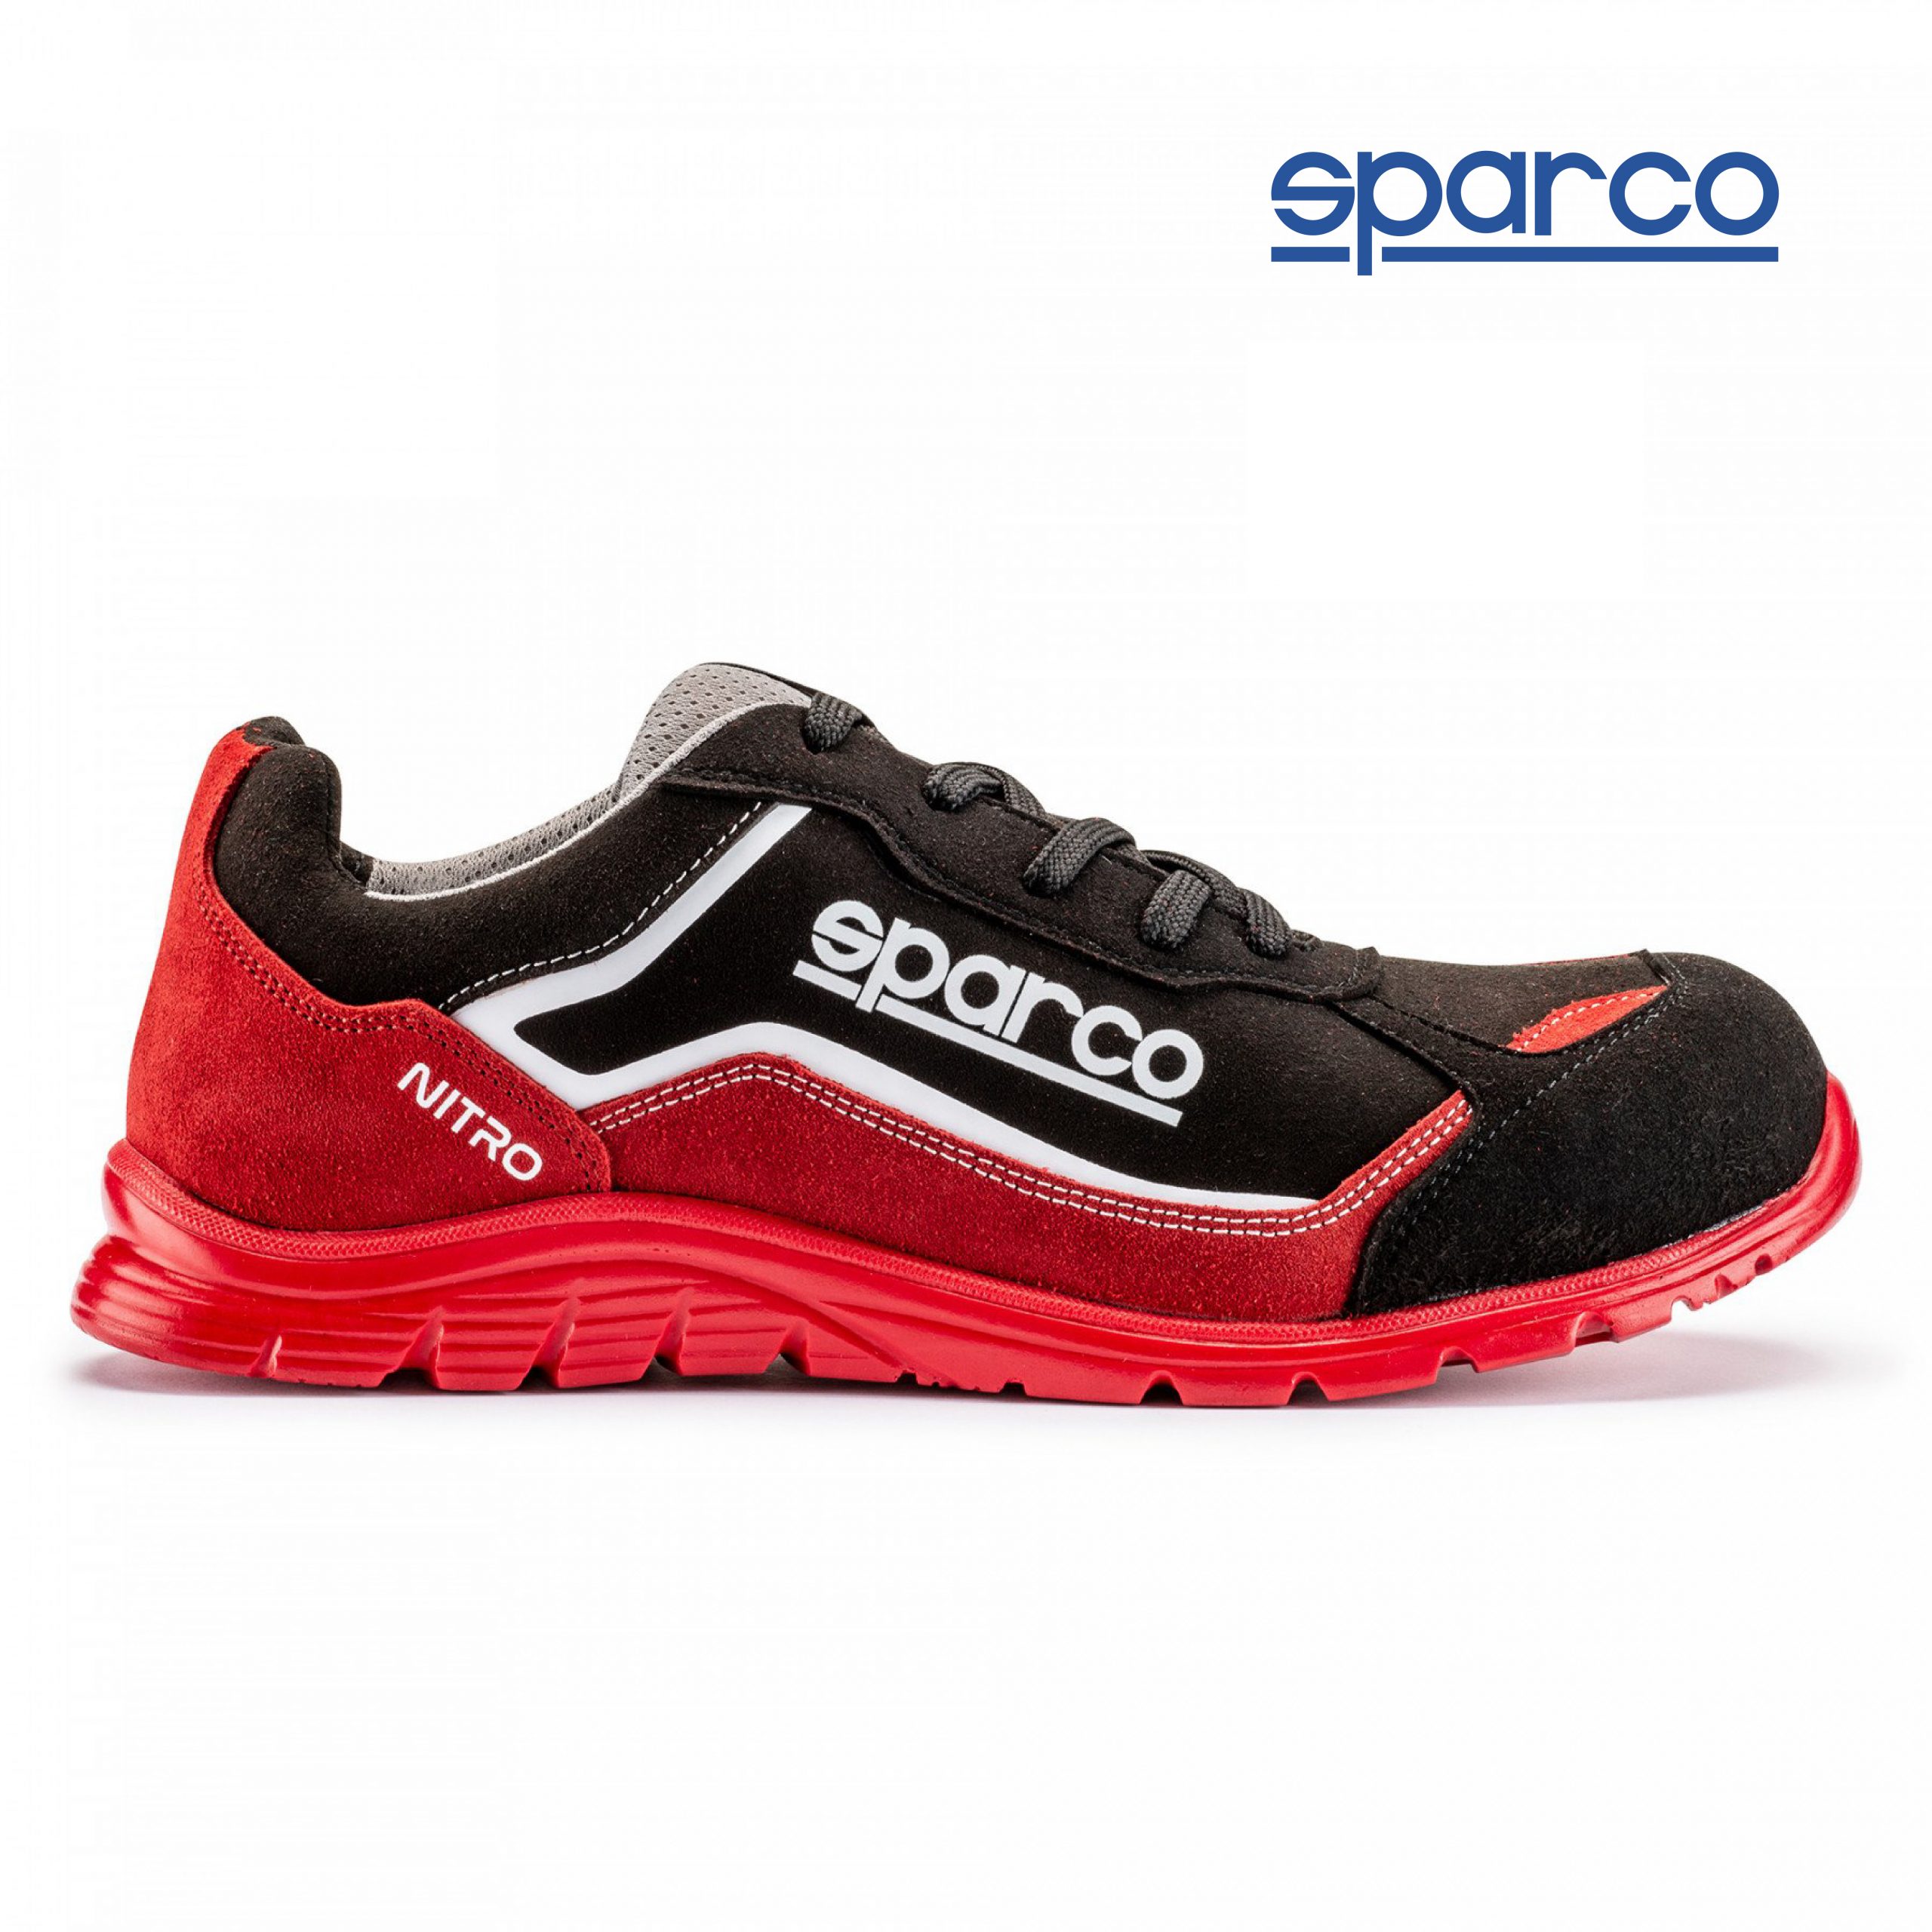 Calzado seguridad Sparco Nitro - Roca La Marina